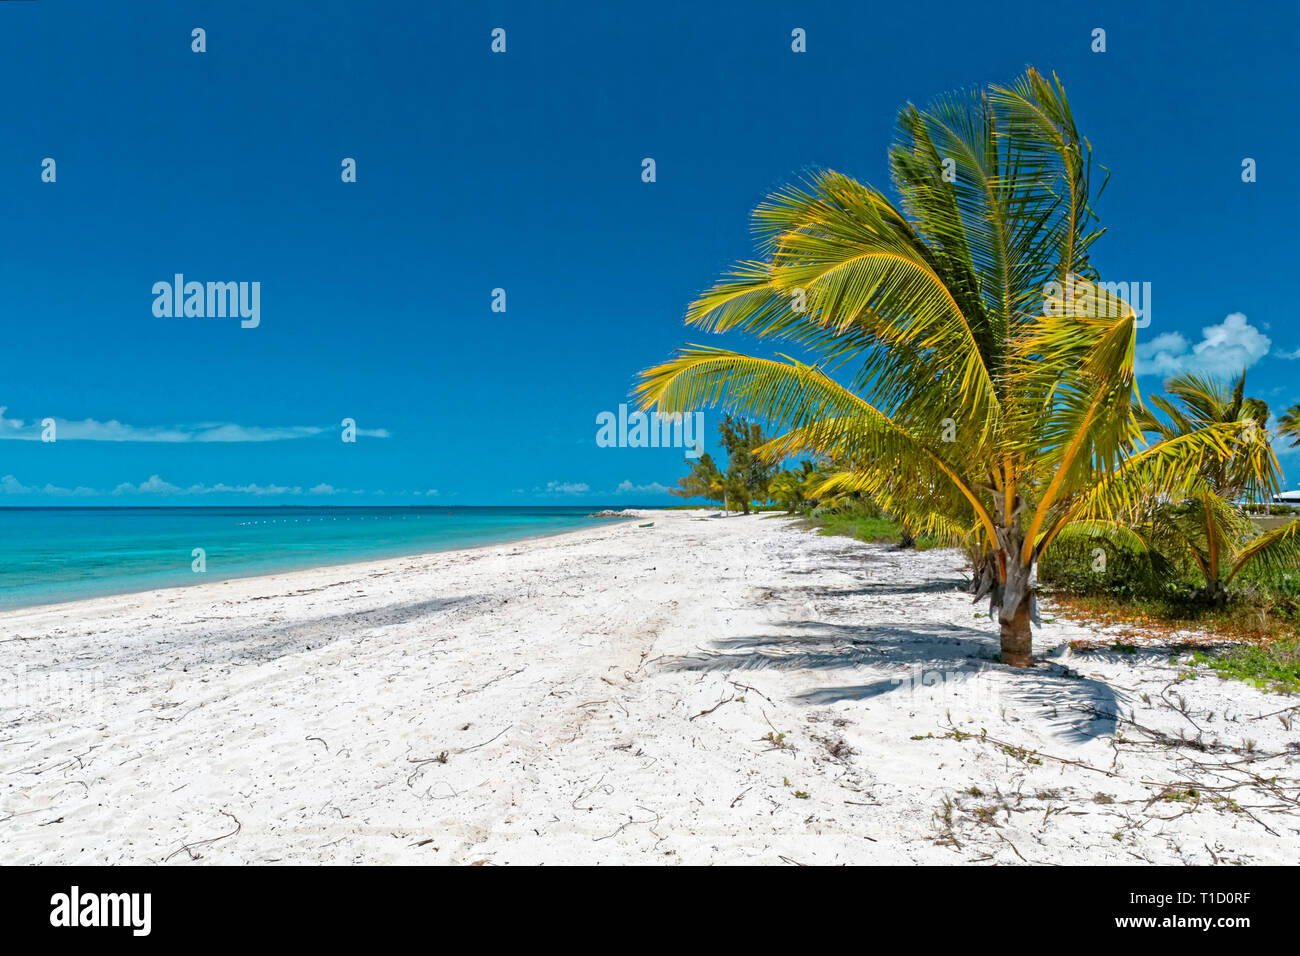 Palm tree at the beach of Eleuthera island, Bahamas, Atlantic ocean, Caribbean Stock Photo